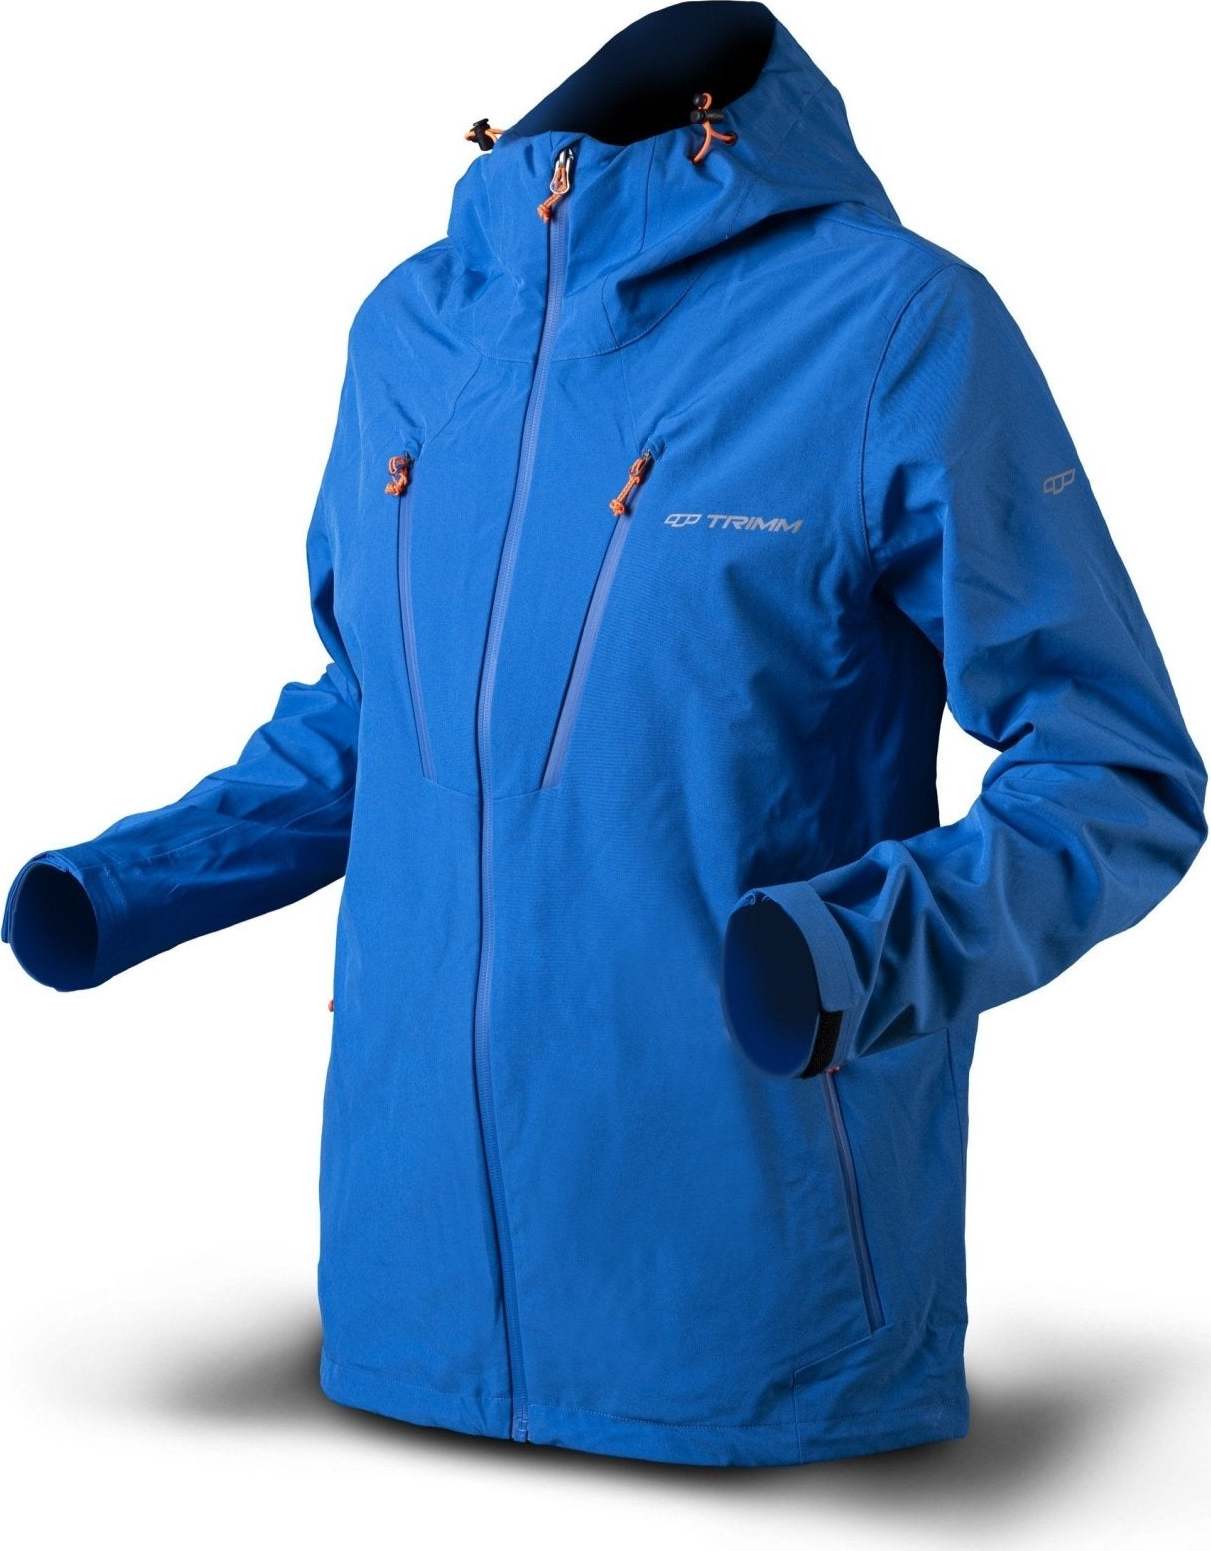 Pánská nepromokavá bunda TRIMM Intense světle modrá Velikost: M, Barva: jeans blue/ orange